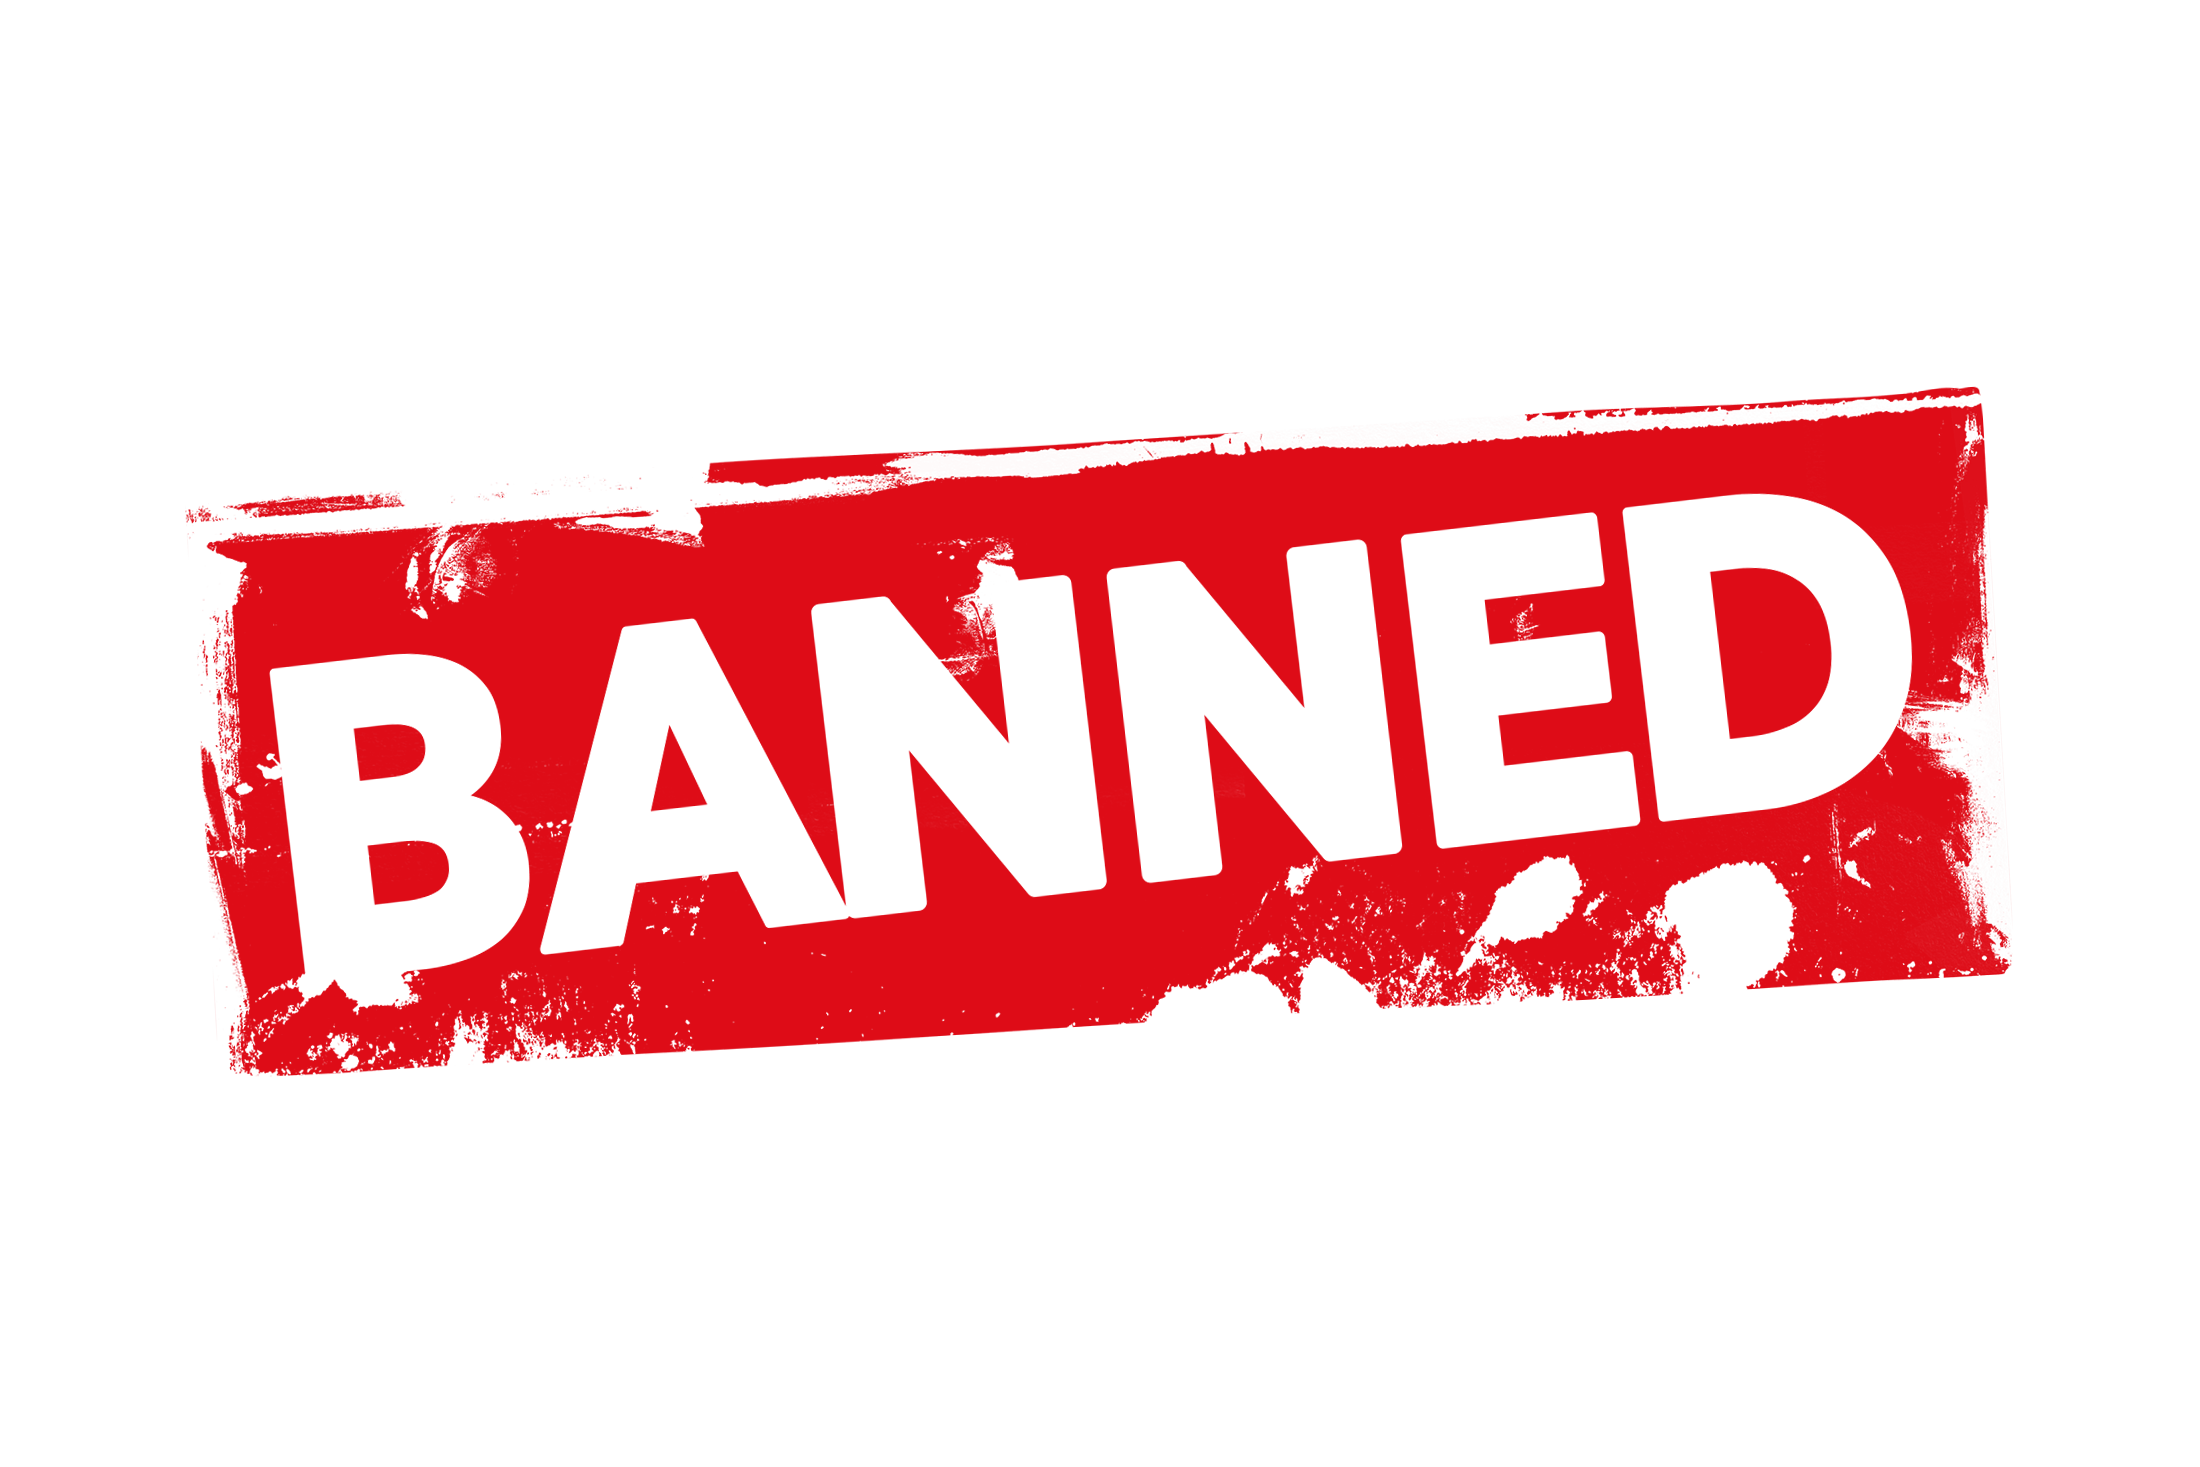 Logo Ban Pt Png 